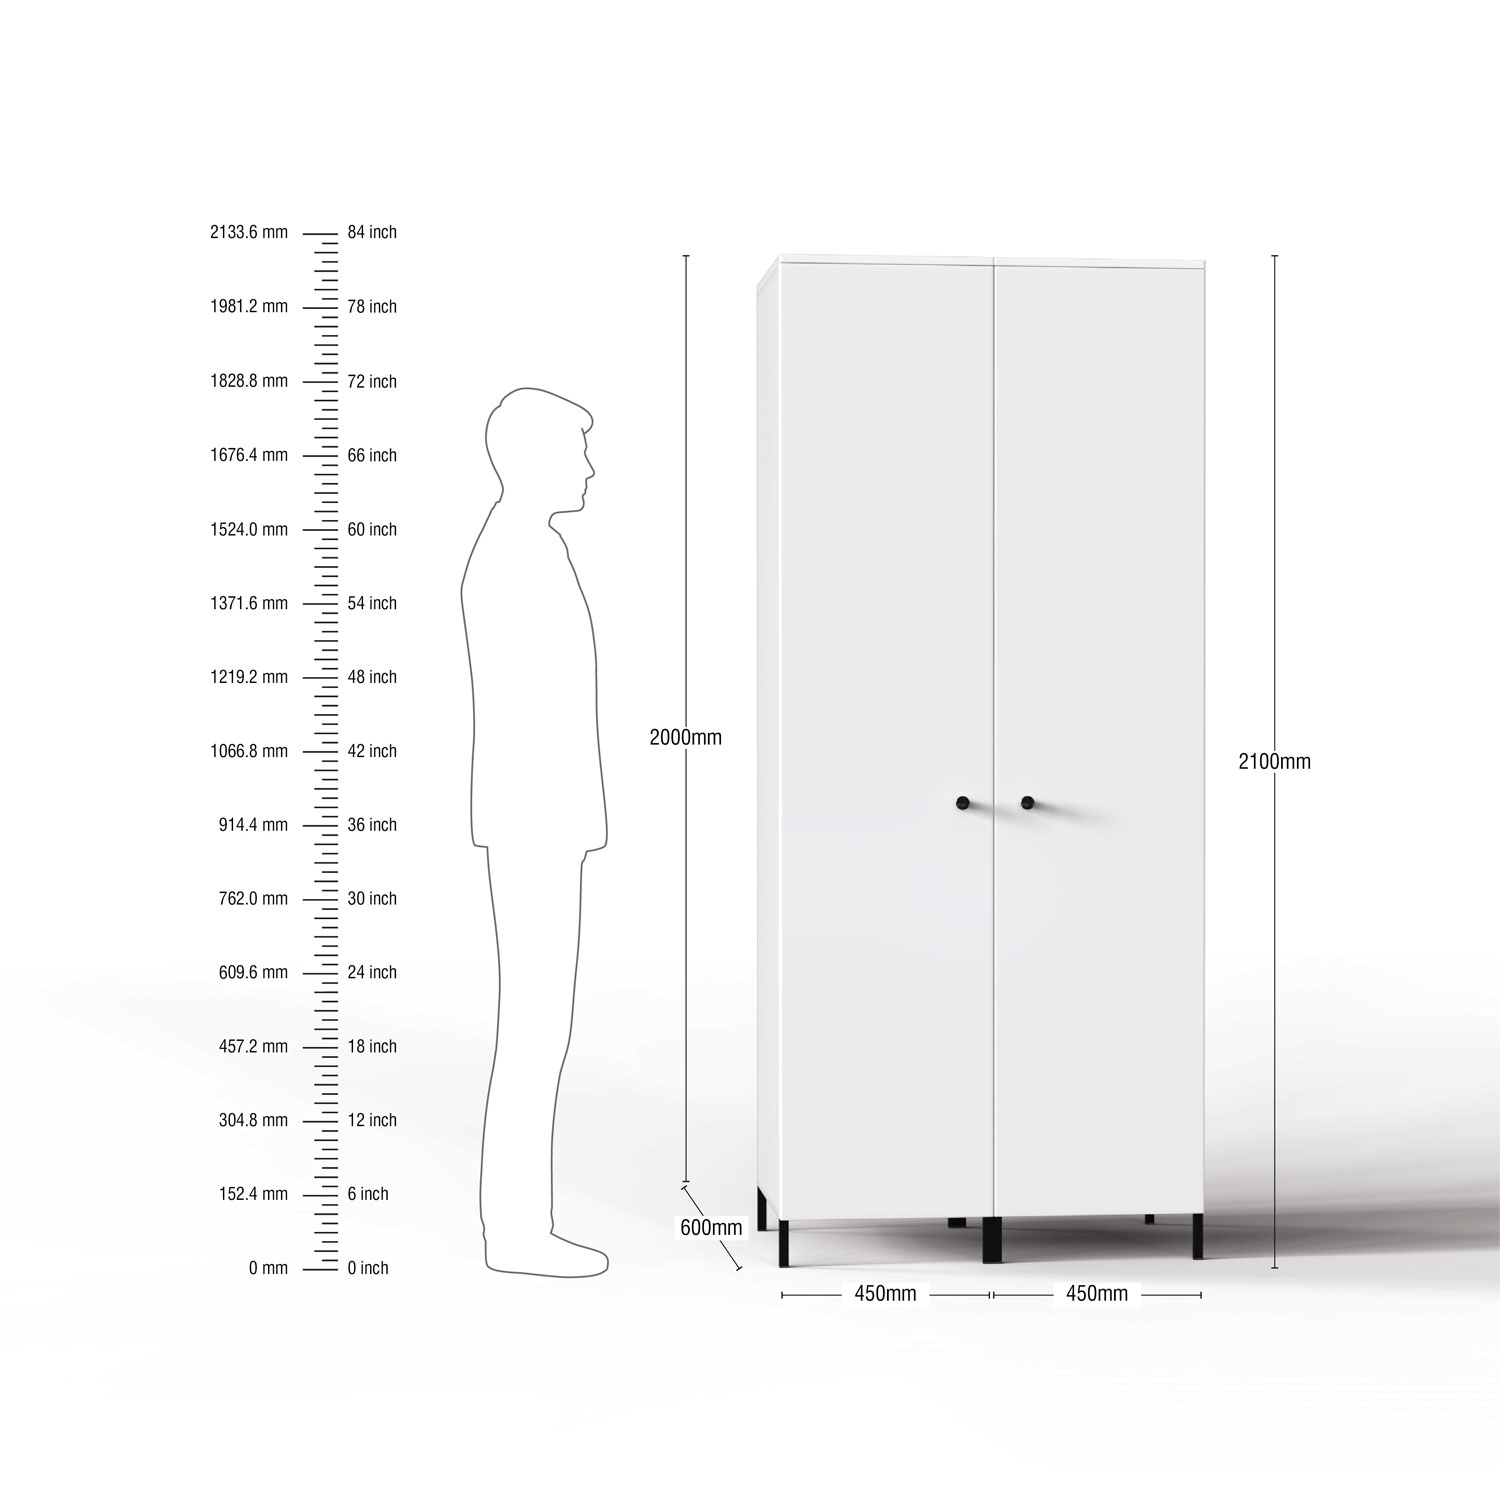 Lambent 2 Door Wardrobe in White and Irish Cream Finish – DWRD001 C88